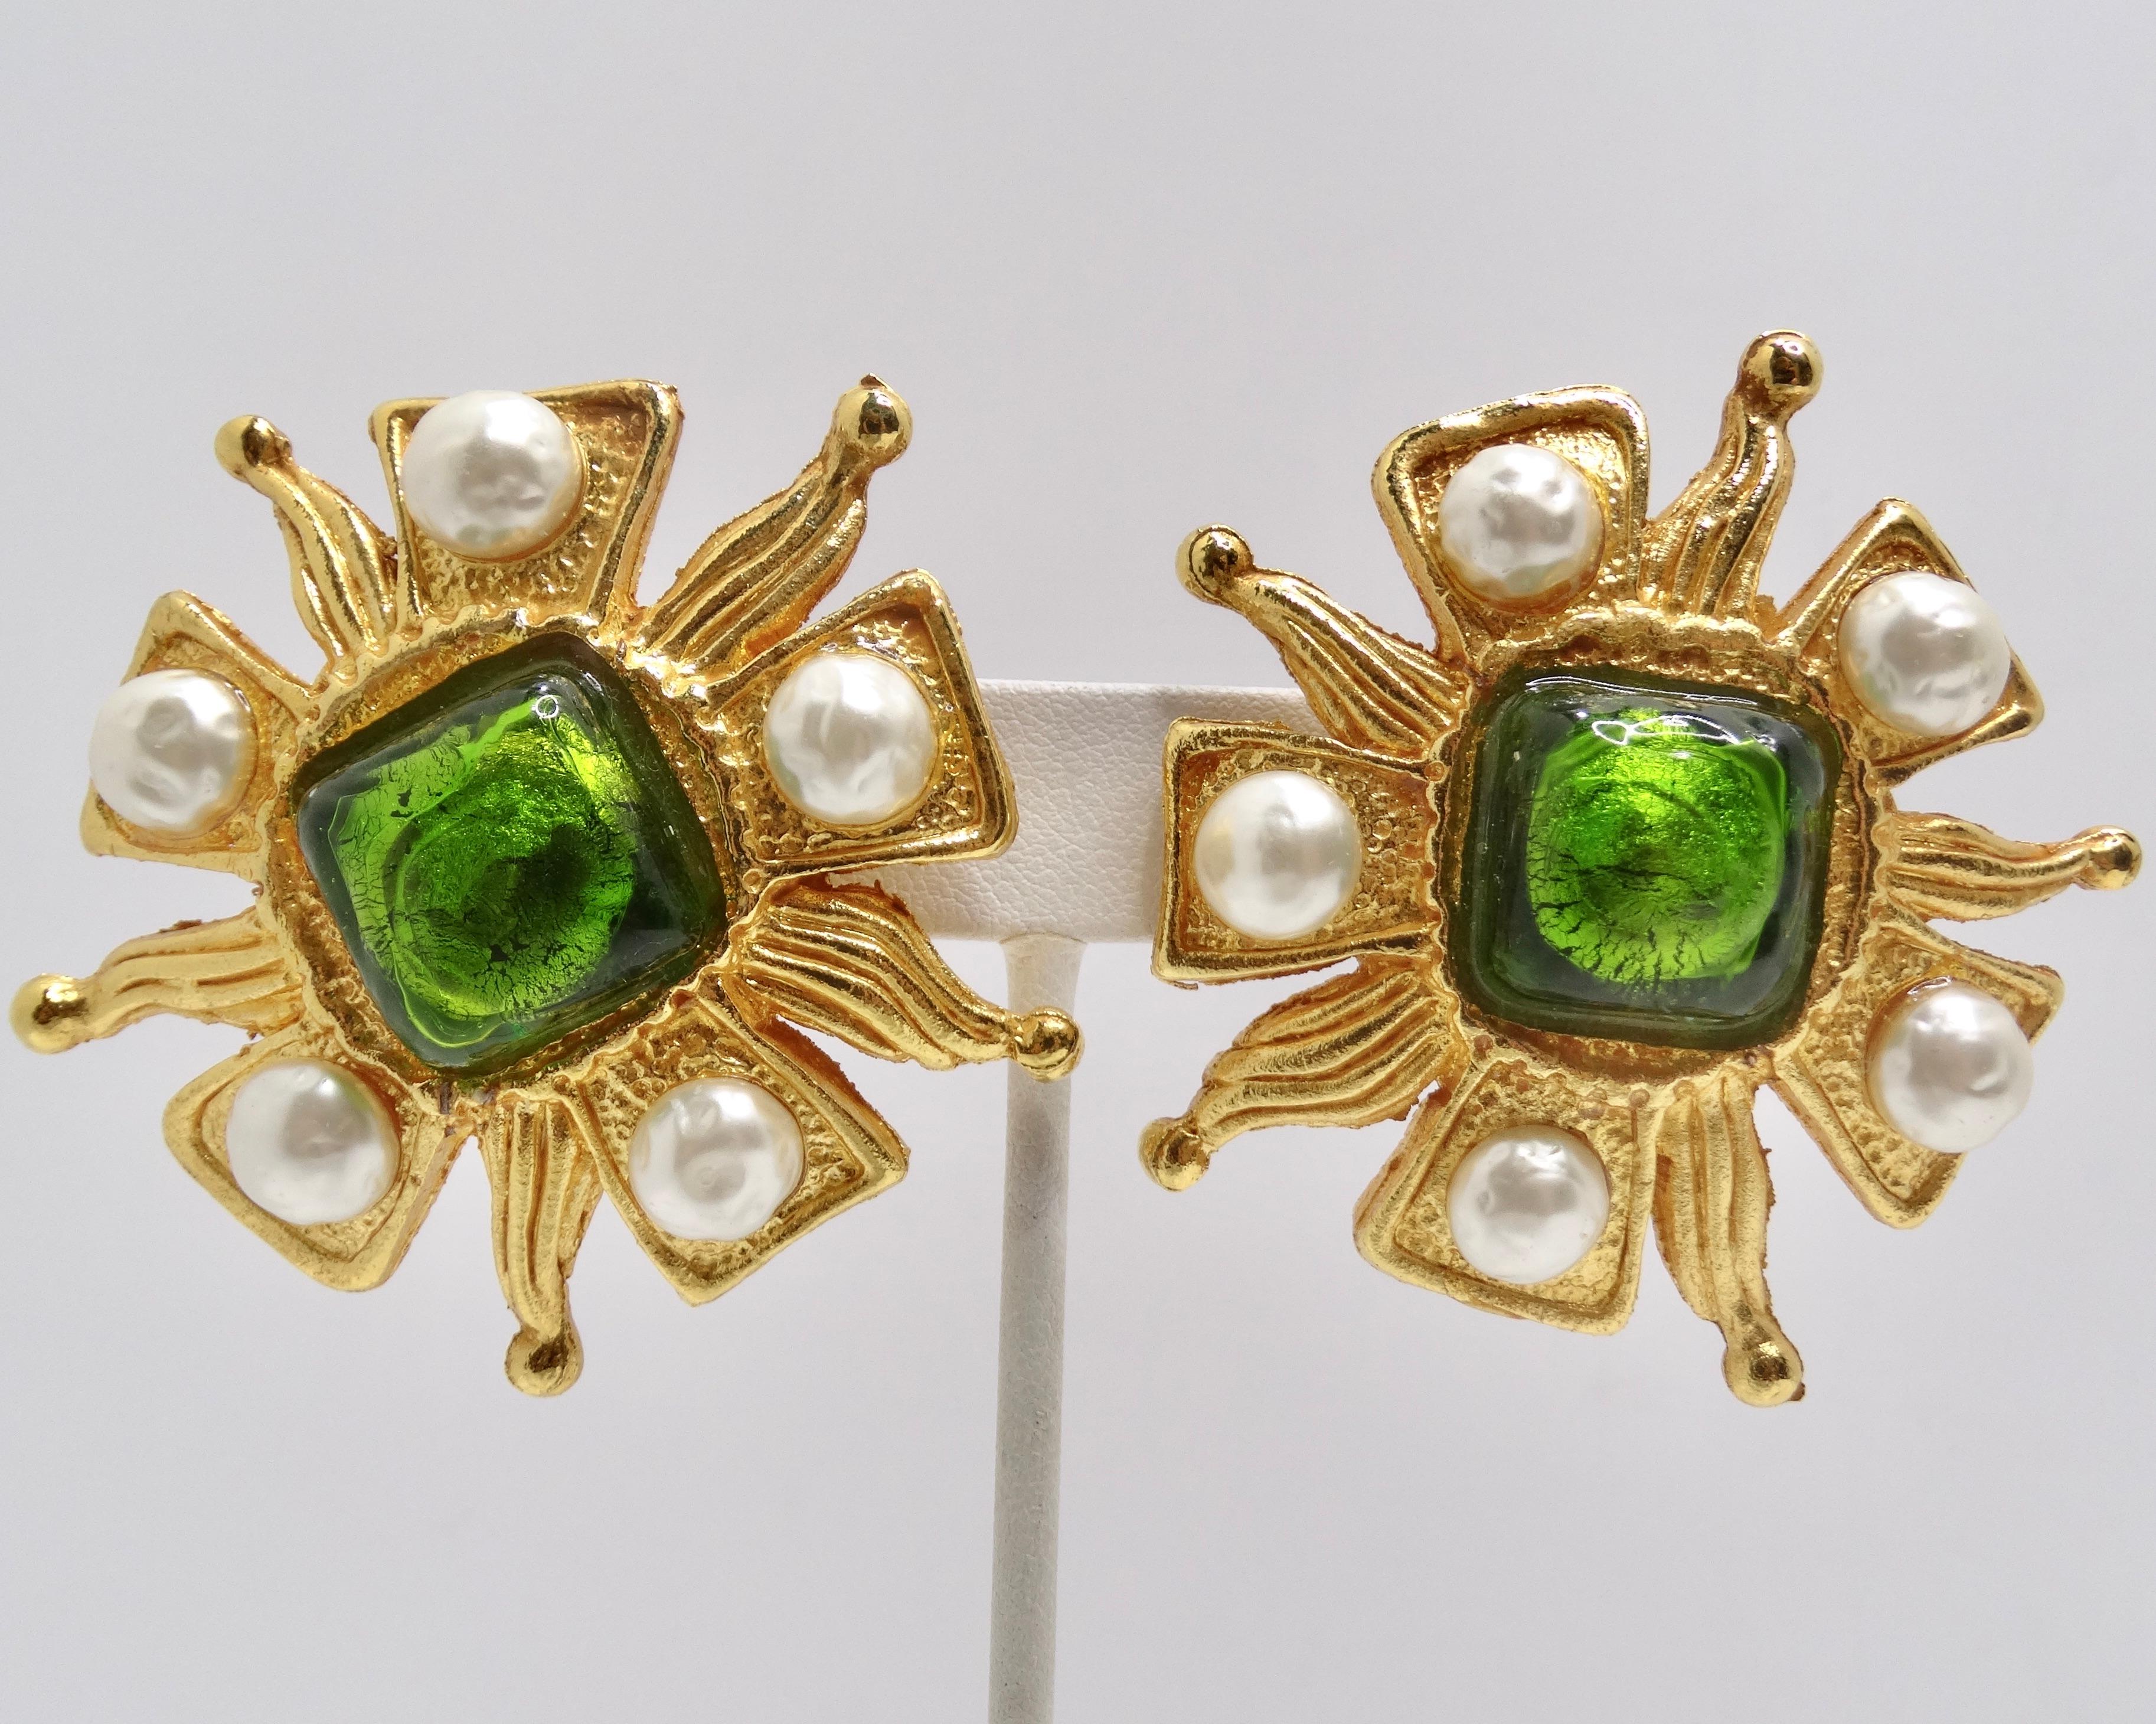 Sichern Sie sich ein Paar exquisite Statement-Ohrringe aus den 1980er Jahren von Dominique Aurientis Paris. Diese auffälligen Ohrringe zeichnen sich durch eine strukturierte, glänzende Gelbvergoldung aus, die dem Design Tiefe und Dimension verleiht.